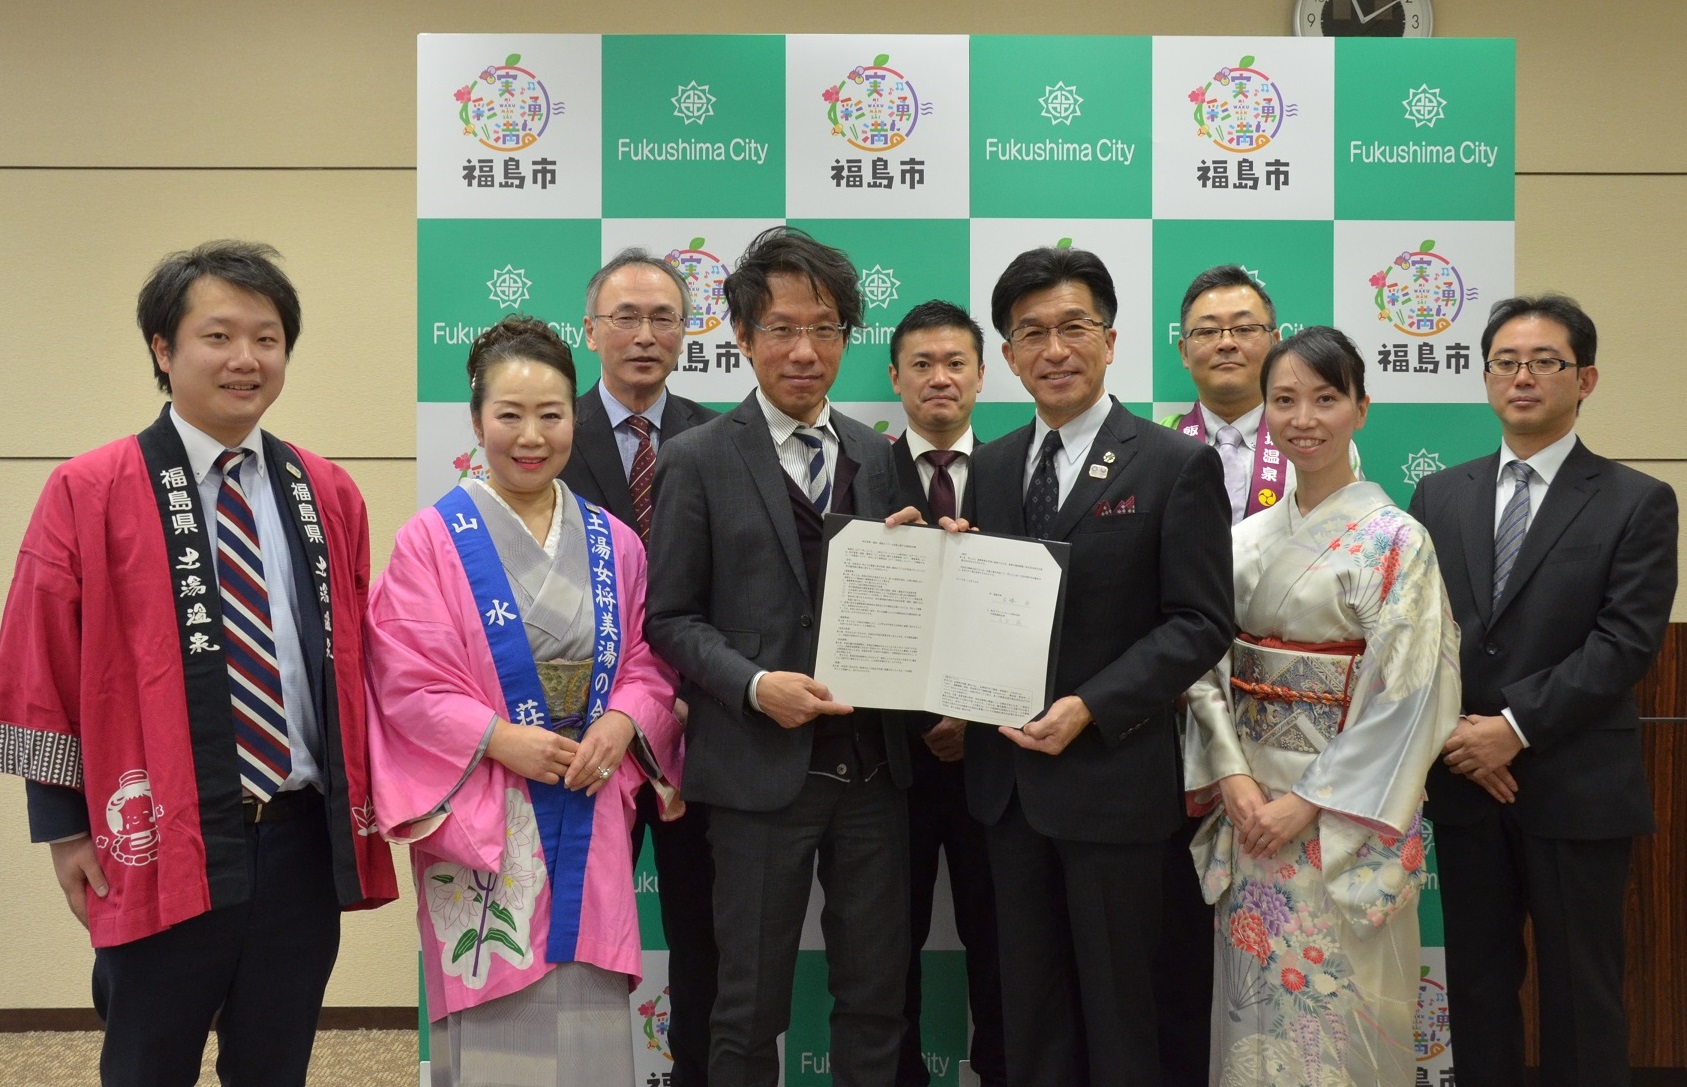 MICEプラットフォーム株式会社の永田代表取締役社長、登録施設代表者と市長